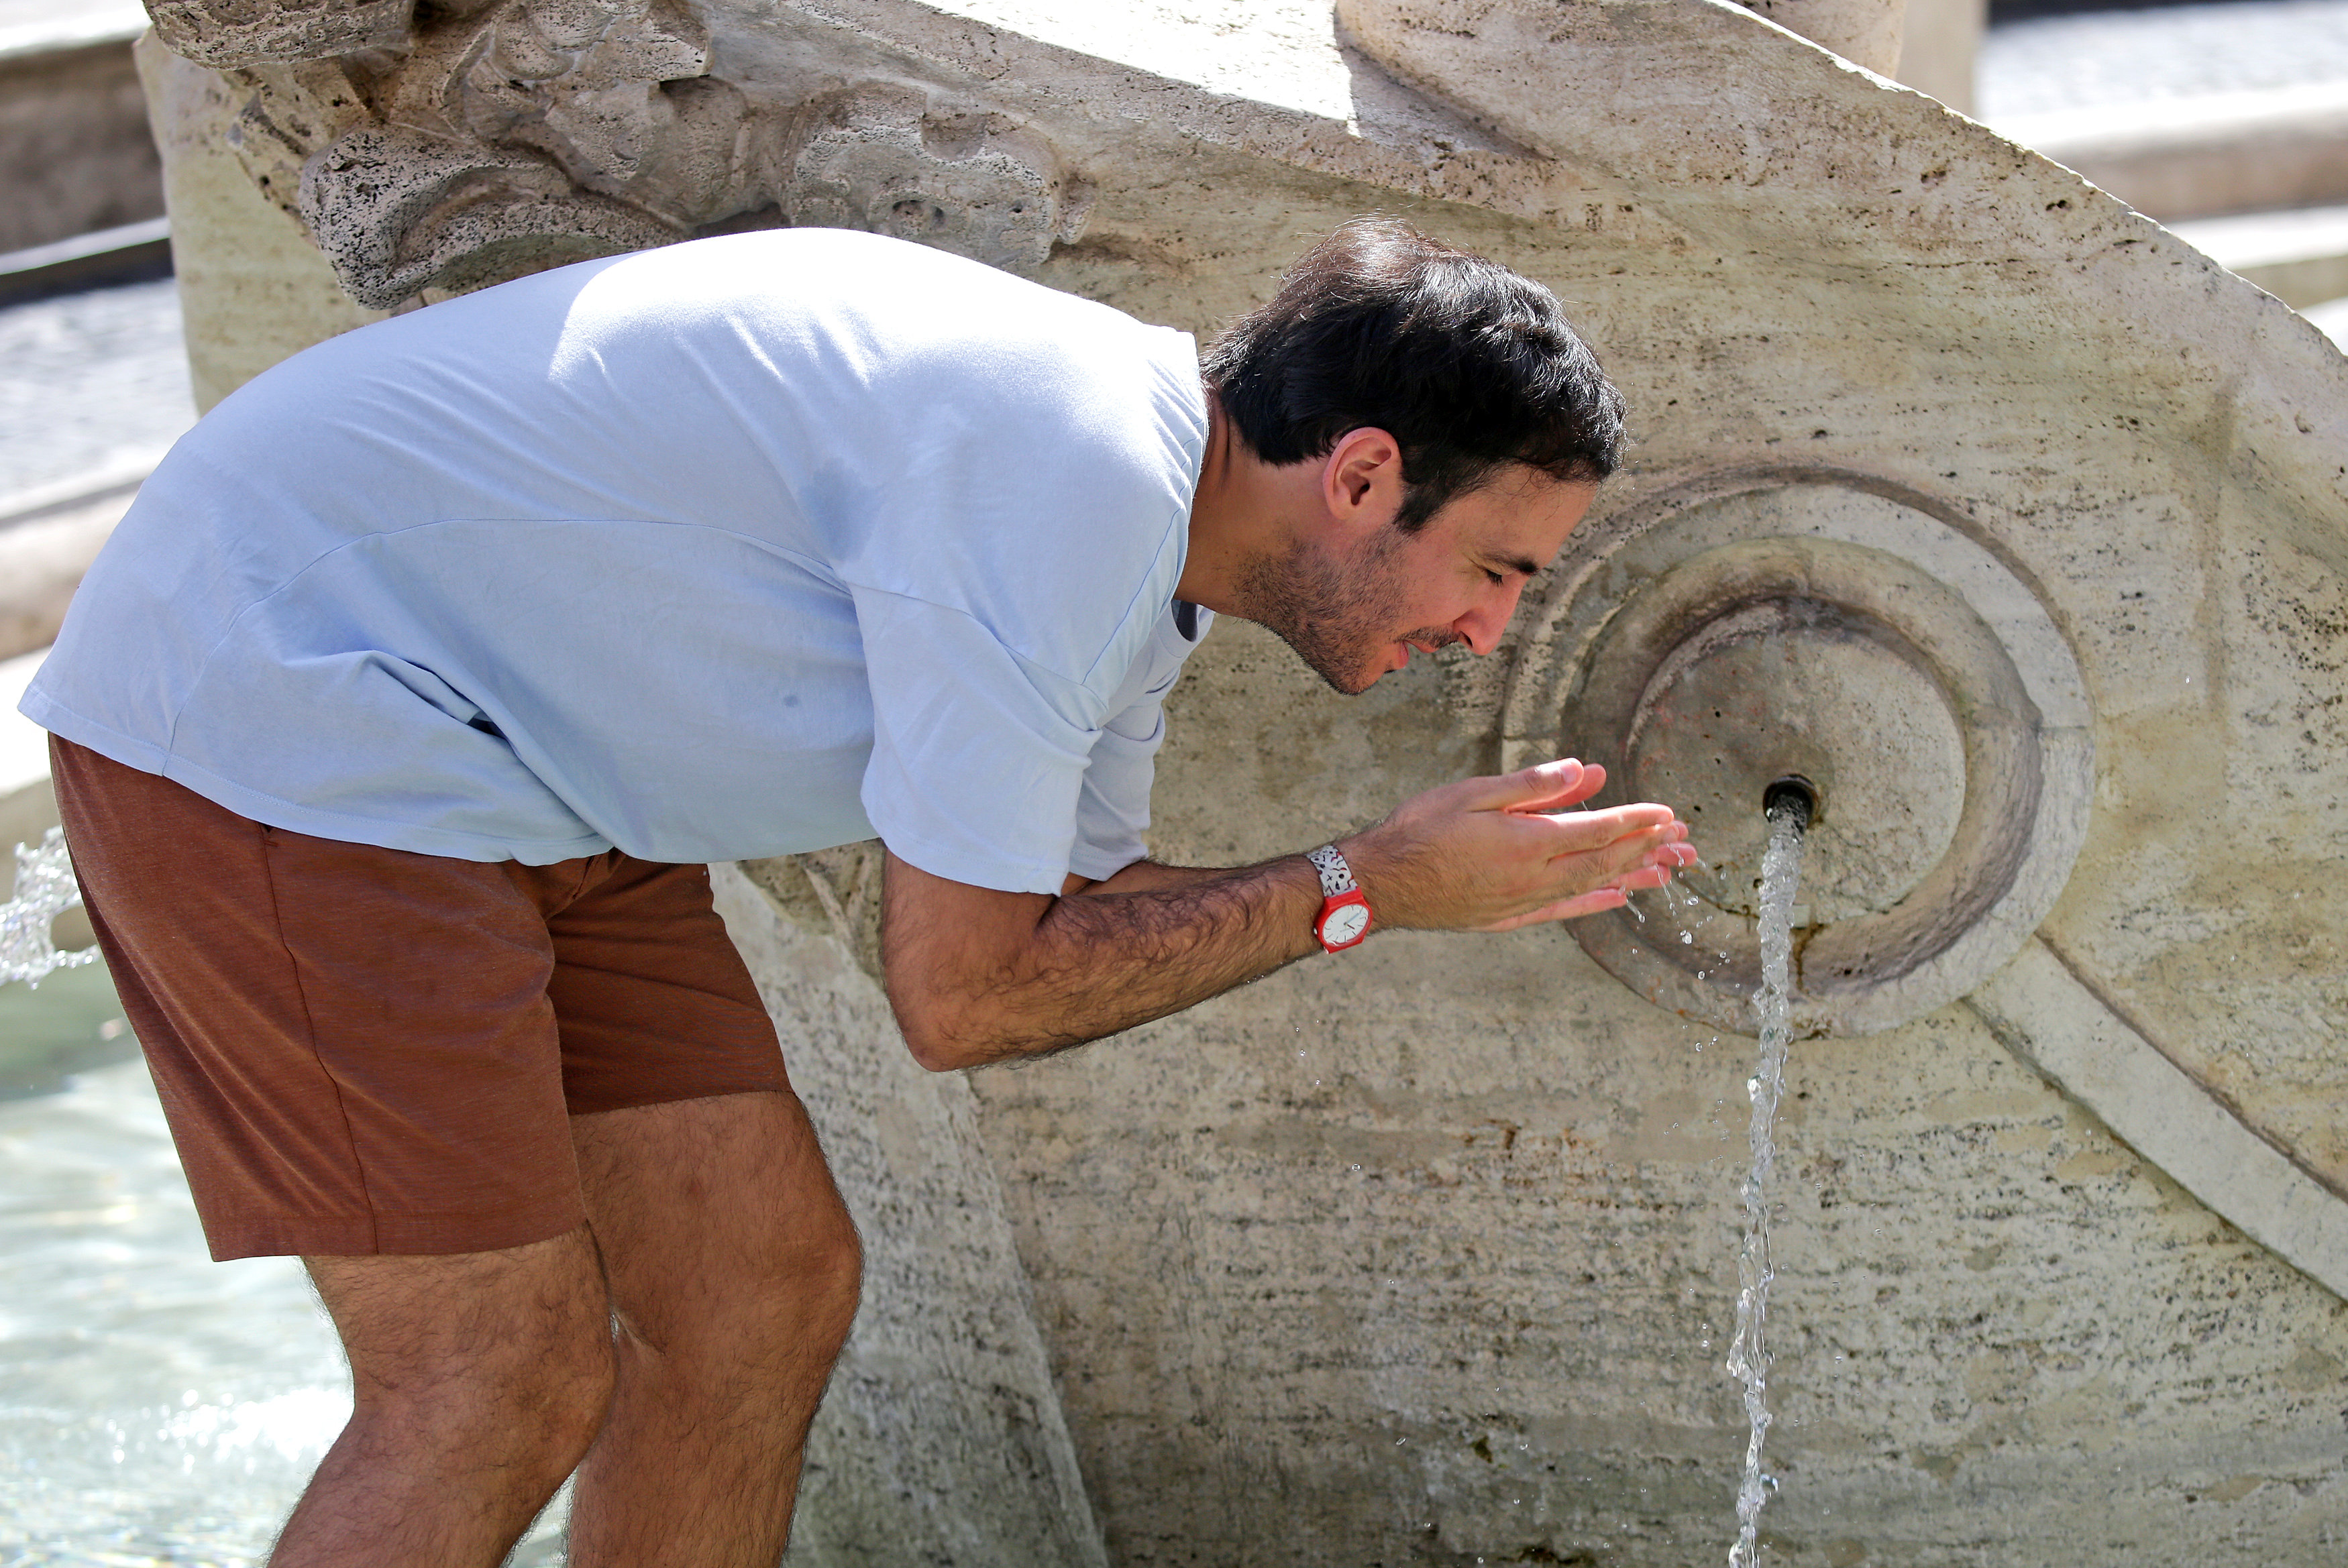 سائح يزور إيطاليا يستخدم المياه بسبب حرارة الجو